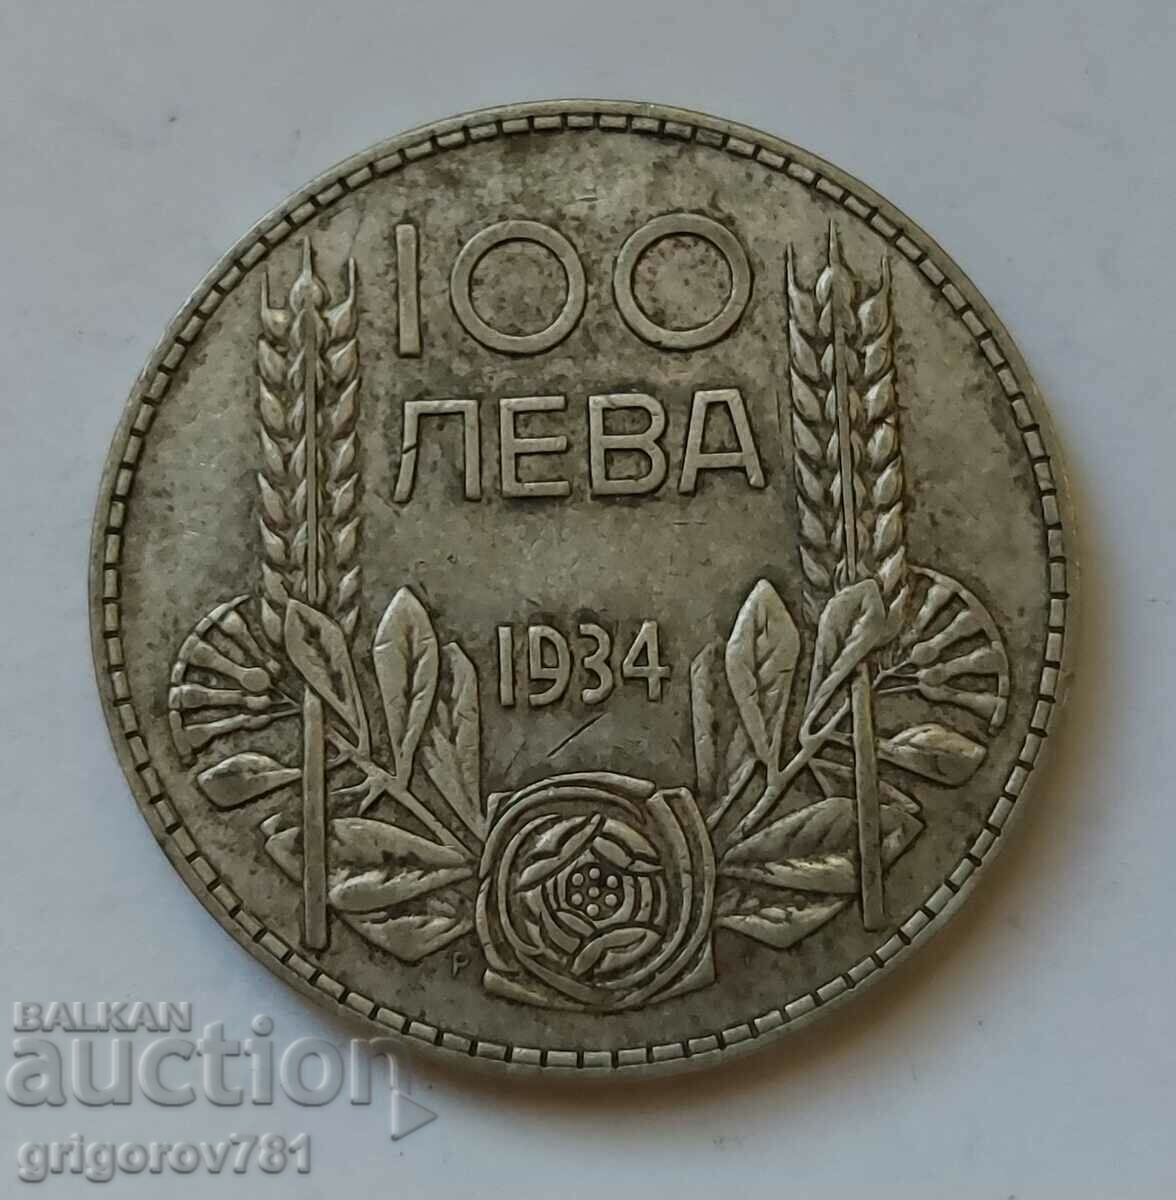 Ασήμι 100 λέβα Βουλγαρία 1934 - ασημένιο νόμισμα #131